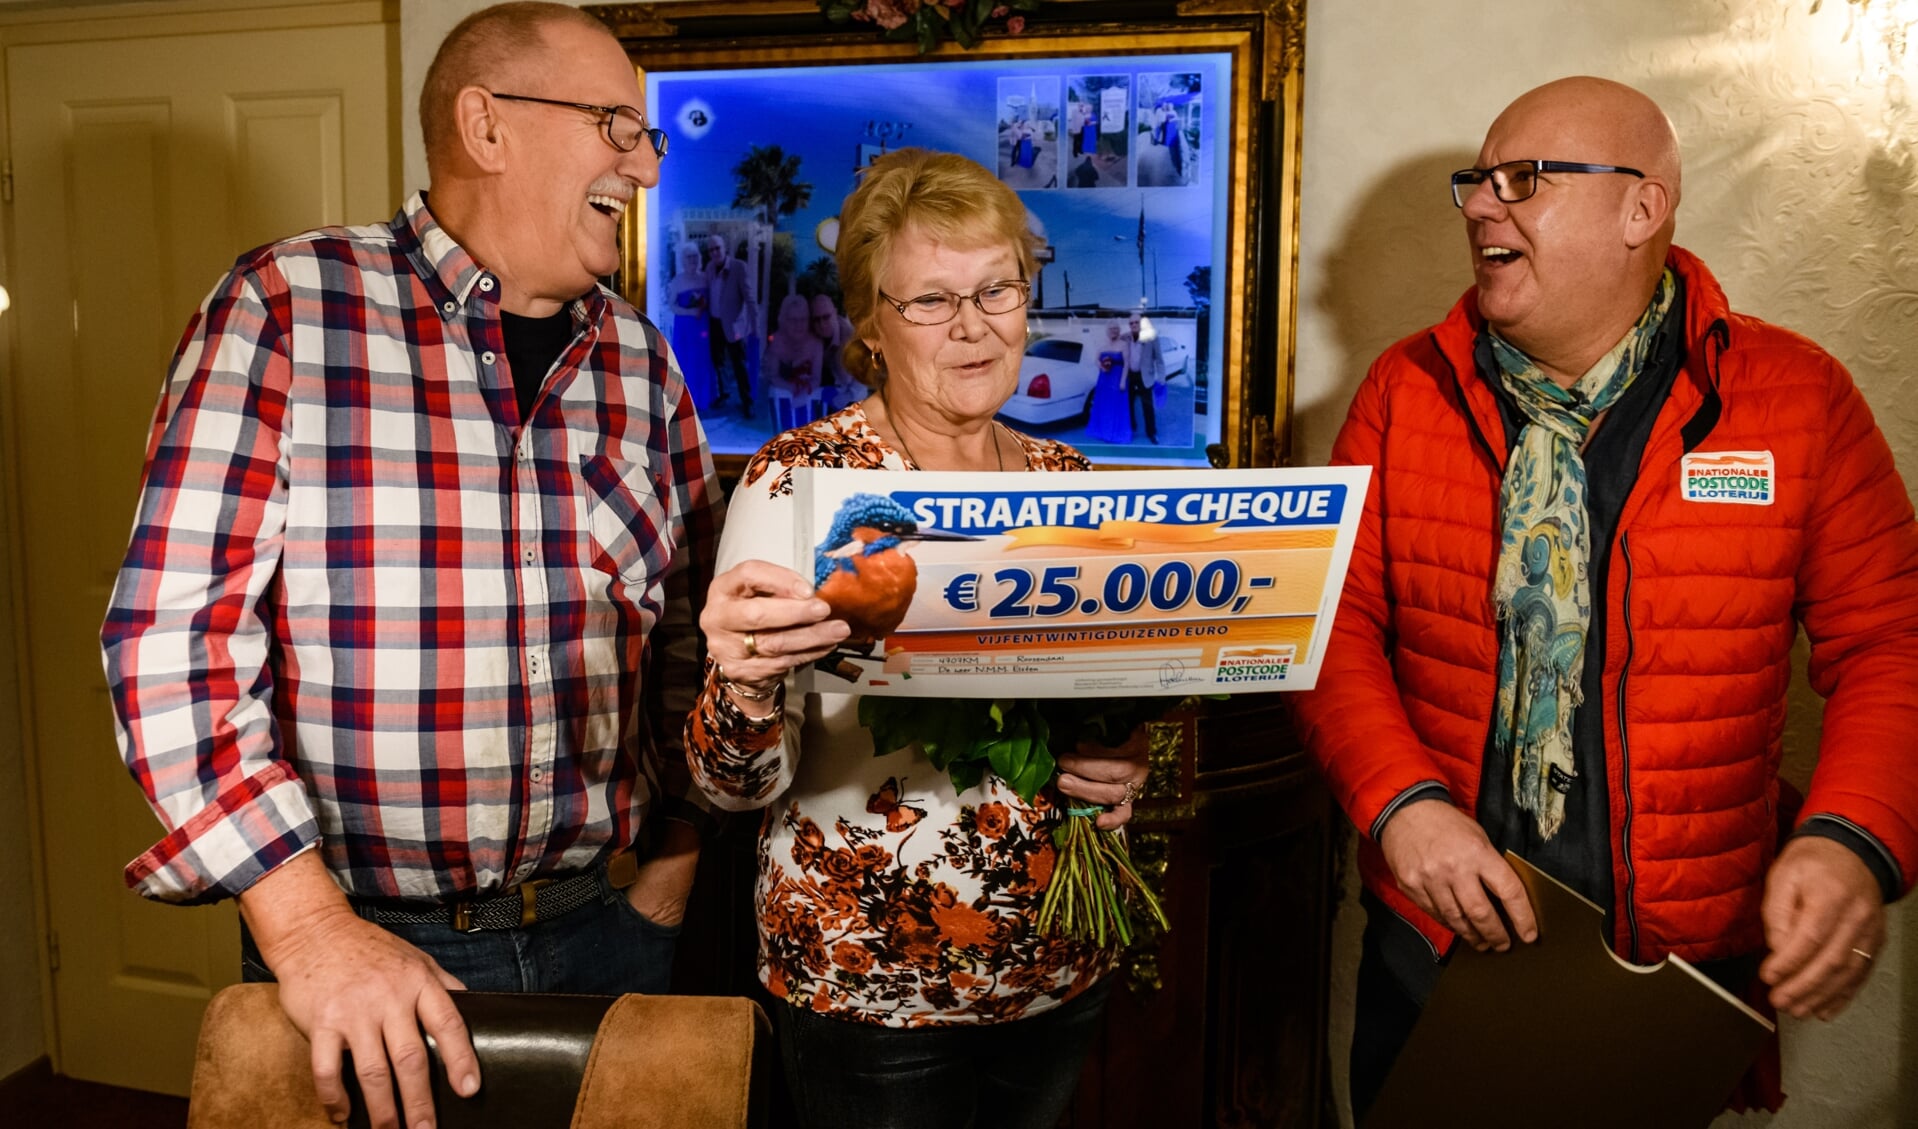 Nico en zijn vrouw Annie uit Roosendaal werden verrast door Postcode Loterij-ambassadeur Gaston Starreveld met de PostcodeStraatprijs-cheque.